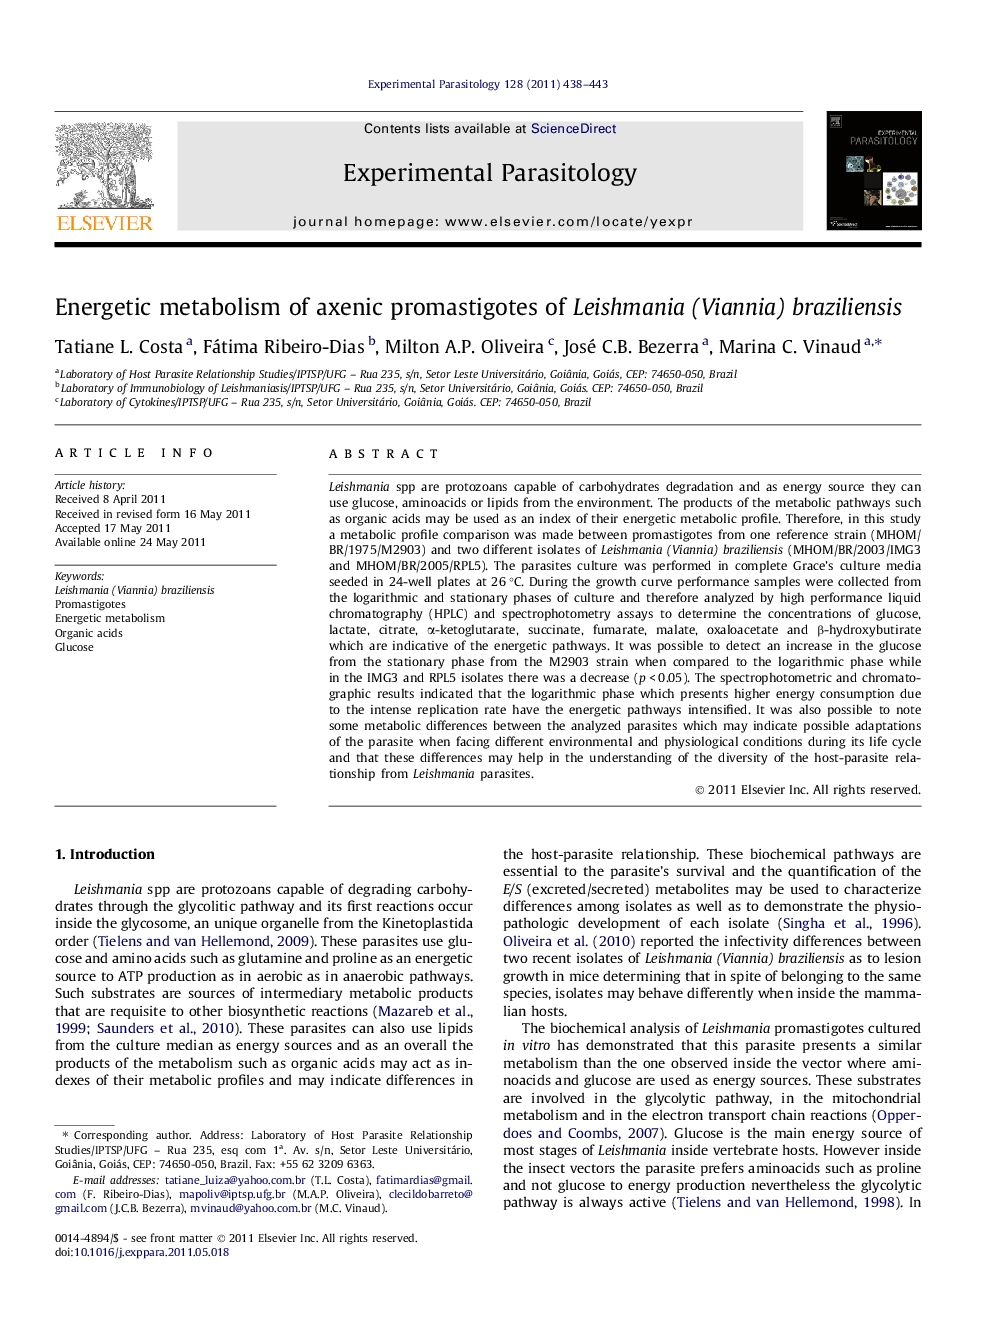 Energetic metabolism of axenic promastigotes of Leishmania (Viannia) braziliensis